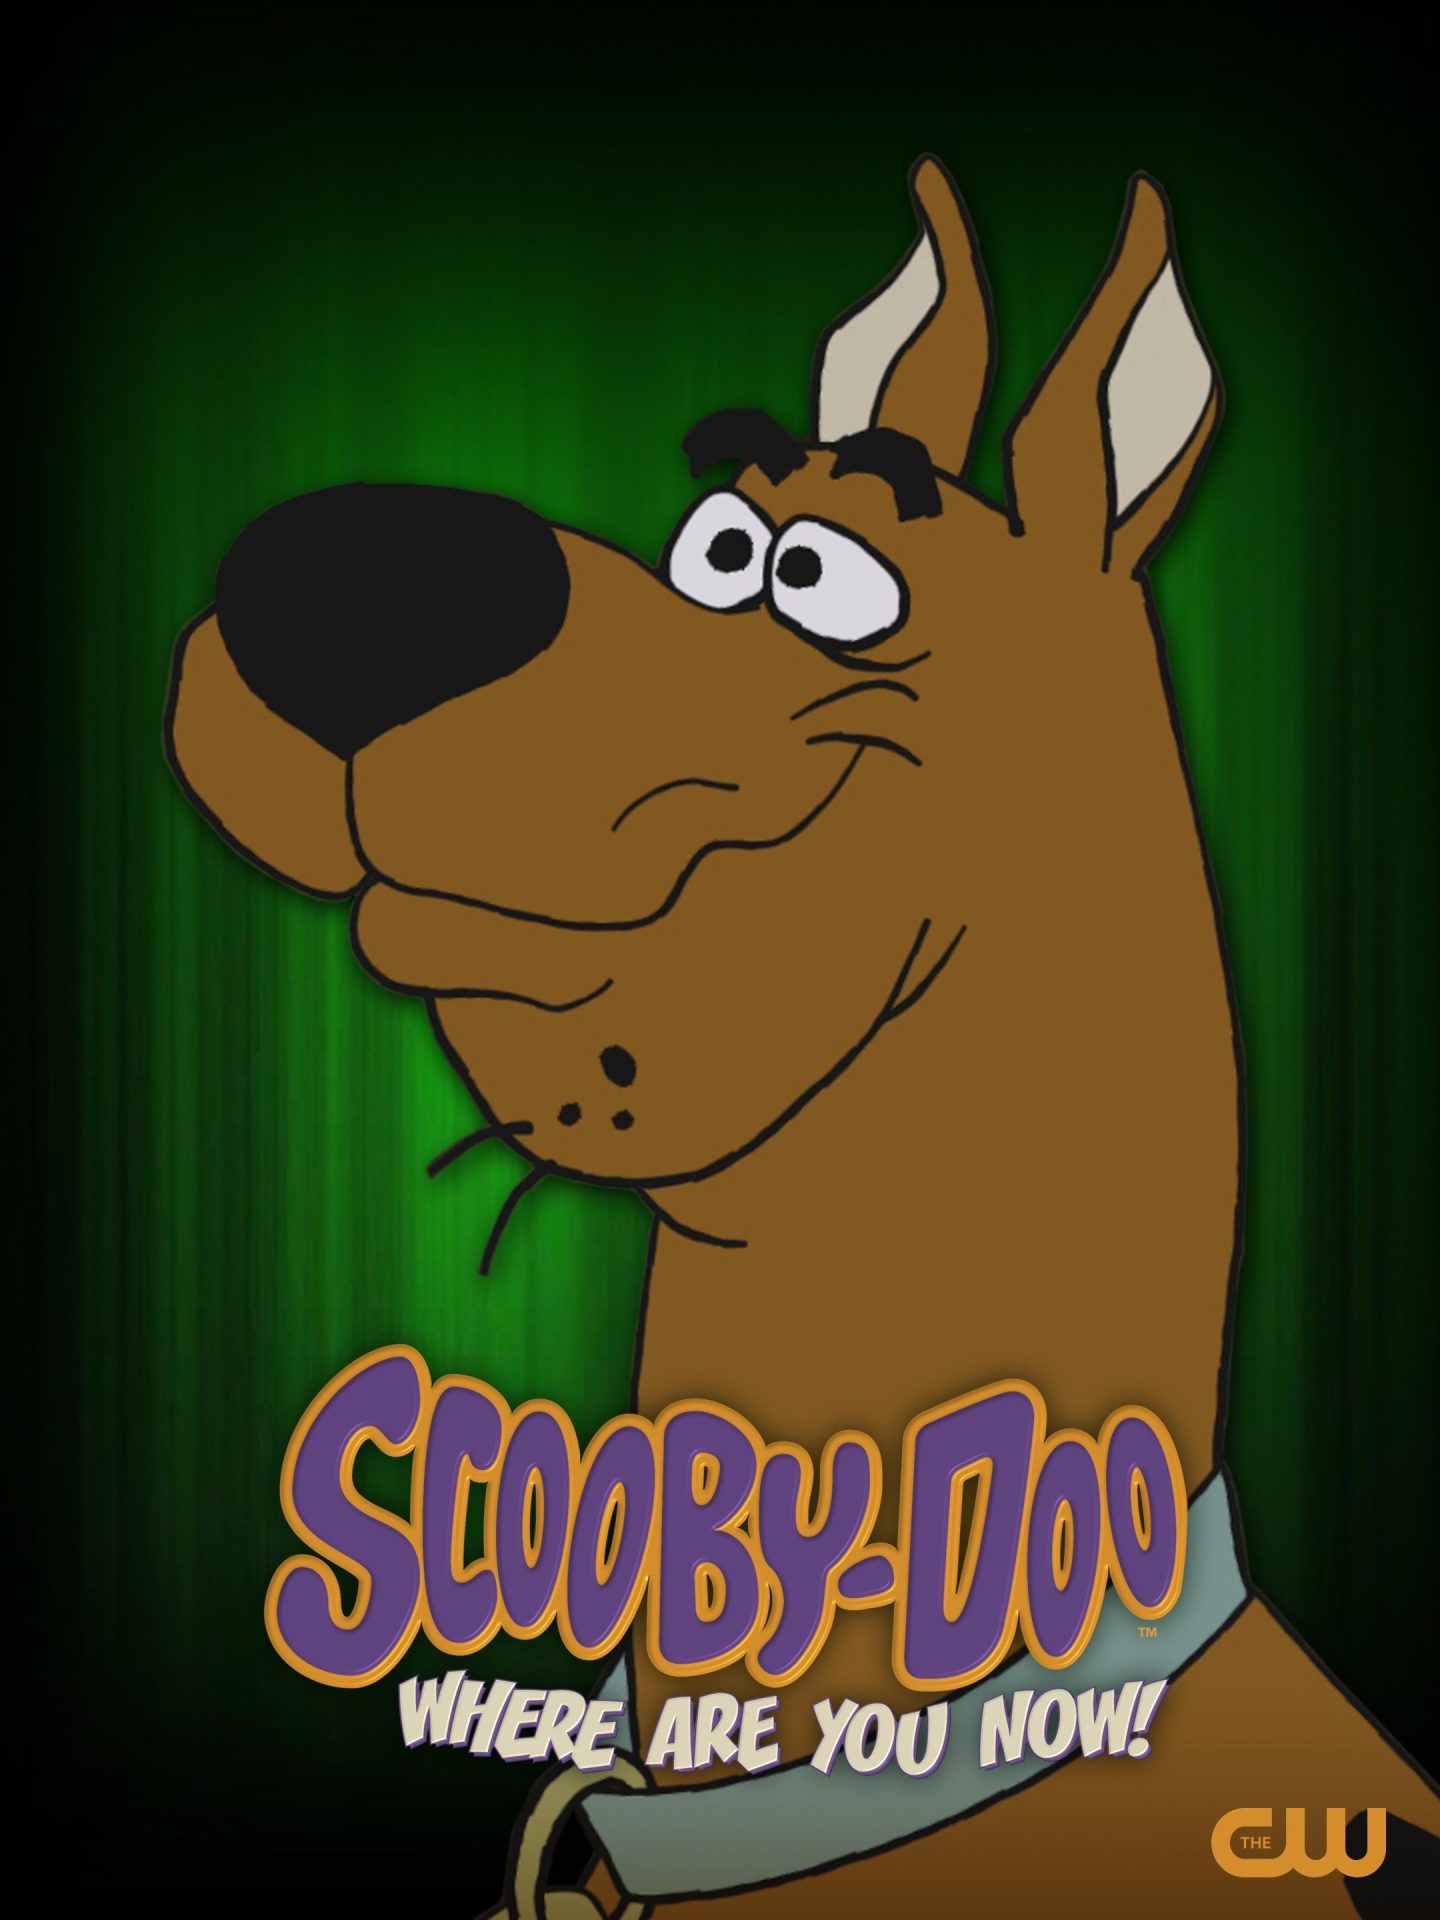 اسکوبی دو، الان کجایی! (Scooby-Doo, Where Are You Now!)